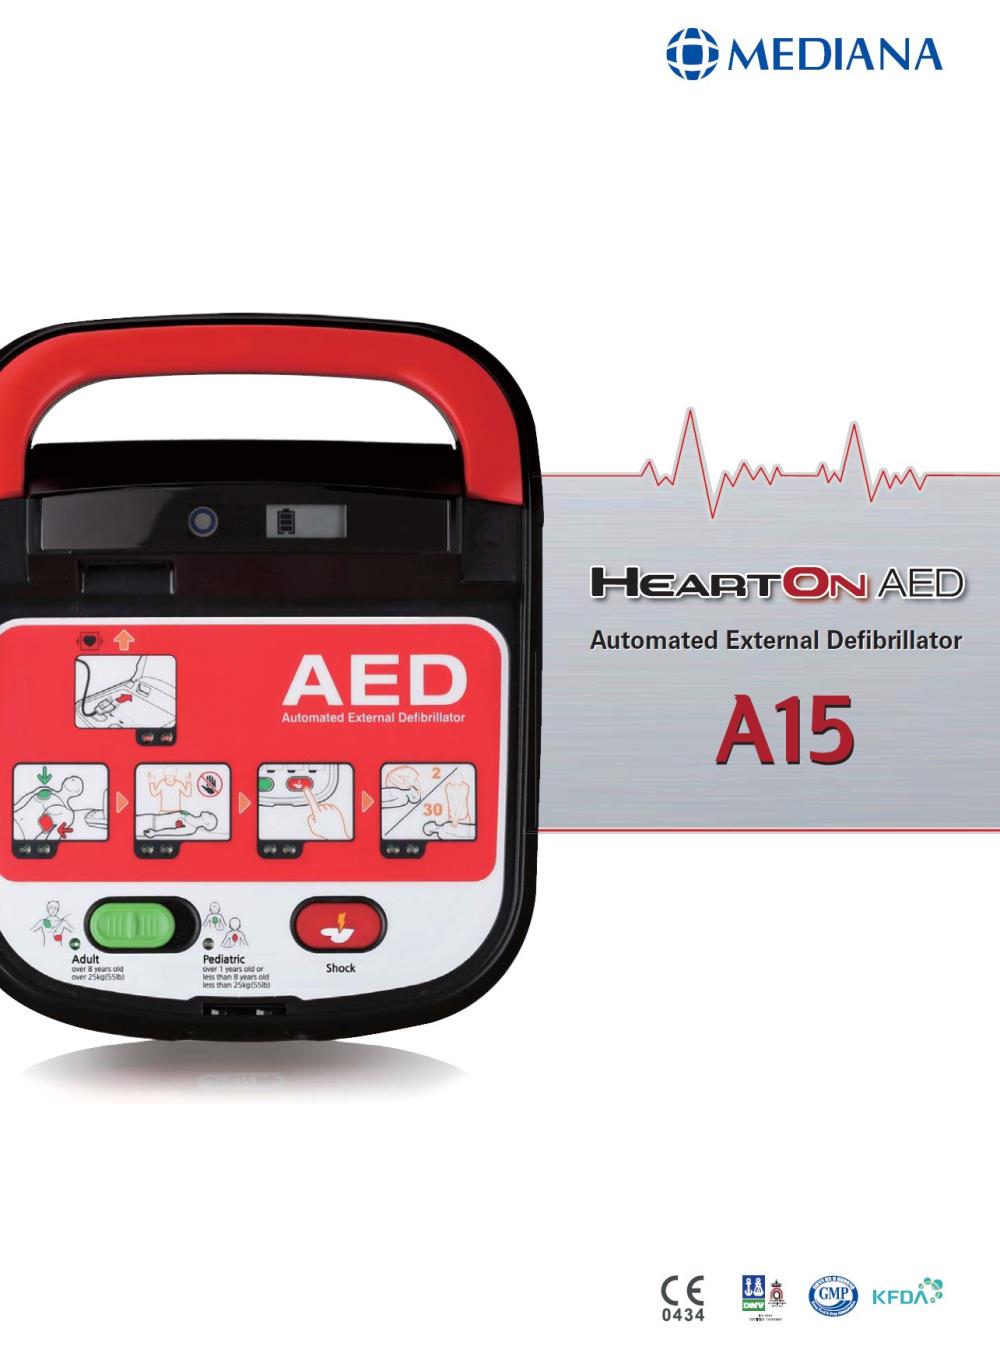 เครื่องกระตุกหัวใจด้วยไฟฟ้า (Automated External Defibrillator/AED), Brand: Mediana, Model: Heart On AED A15 ,#ขาย #เครื่องกระตุกหัวใจด้วยไฟฟ้า #เครื่องกระตุกหัวใจ #AED #mediana #A15 #AutomatedExternalDefibrillator #Defibrillator #ExternalDefibrillator #MedianaA15 #AEDA15 #HeartonAED #heartonAEDA15 #lab #eec #dealer #distributor #ตัวแทนจำหน่าย #โรงงาน #อุตสาหกรรม #สินค้าอุตสาหกรรม #นิคมอุตสาหกรรม #รับเหมา #ก่อสร้าง #construction #industrial #engineer #engineering #workicon #workicontech,,Instruments and Controls/Laboratory Equipment